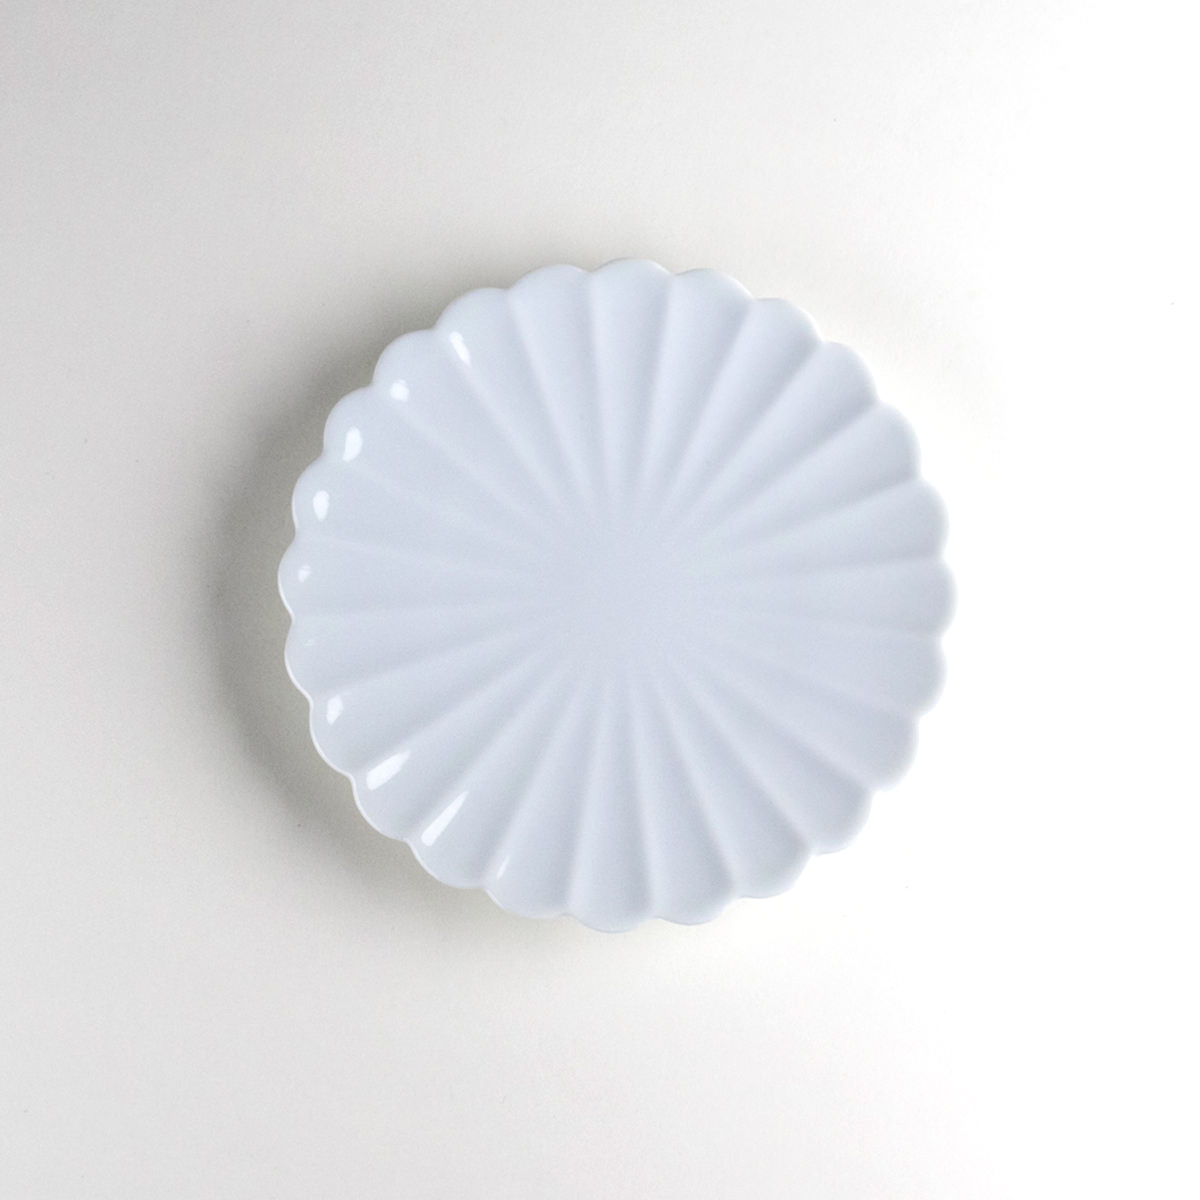 取り皿 12.2cm フラット おしゃれ 中皿 和食器 有田焼 日本製 白磁菊型 4寸皿